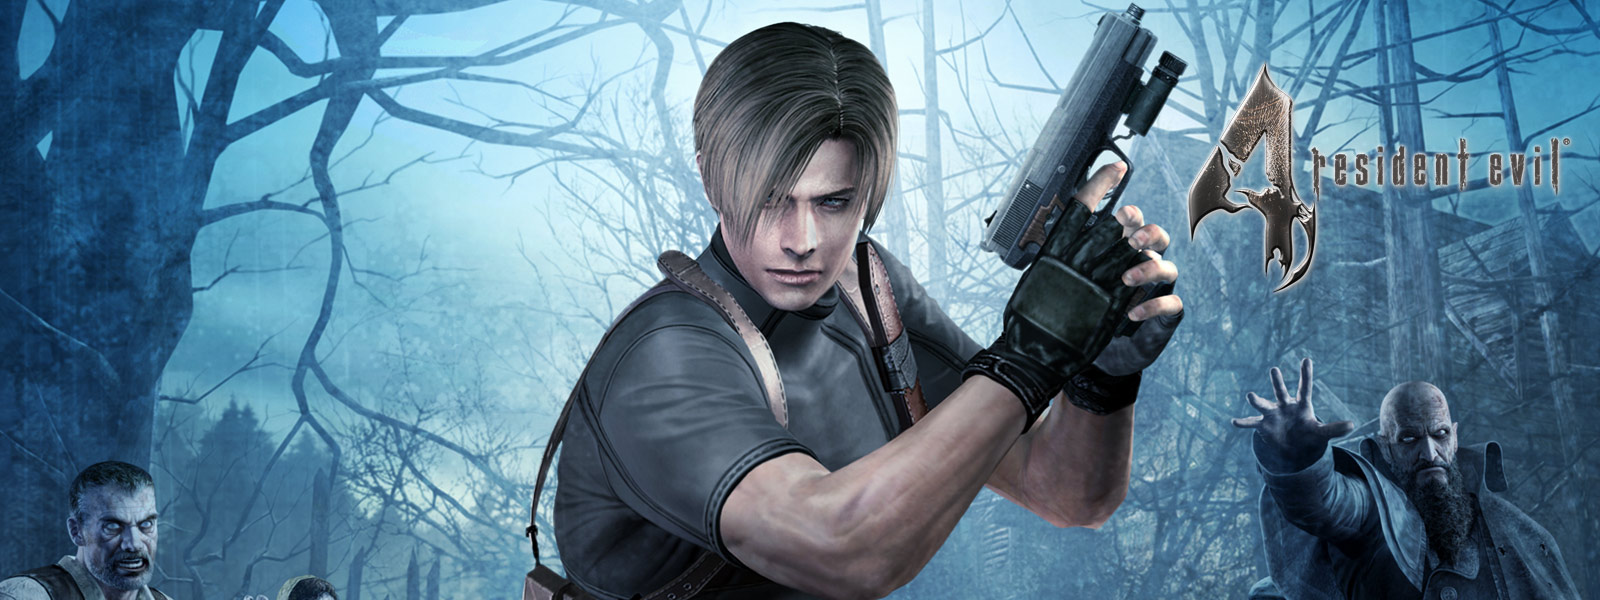 Resident Evil 4, znajdująca się w mrocznym lesie i otoczona przez zombie postać z gry z pistoletem w dłoniach